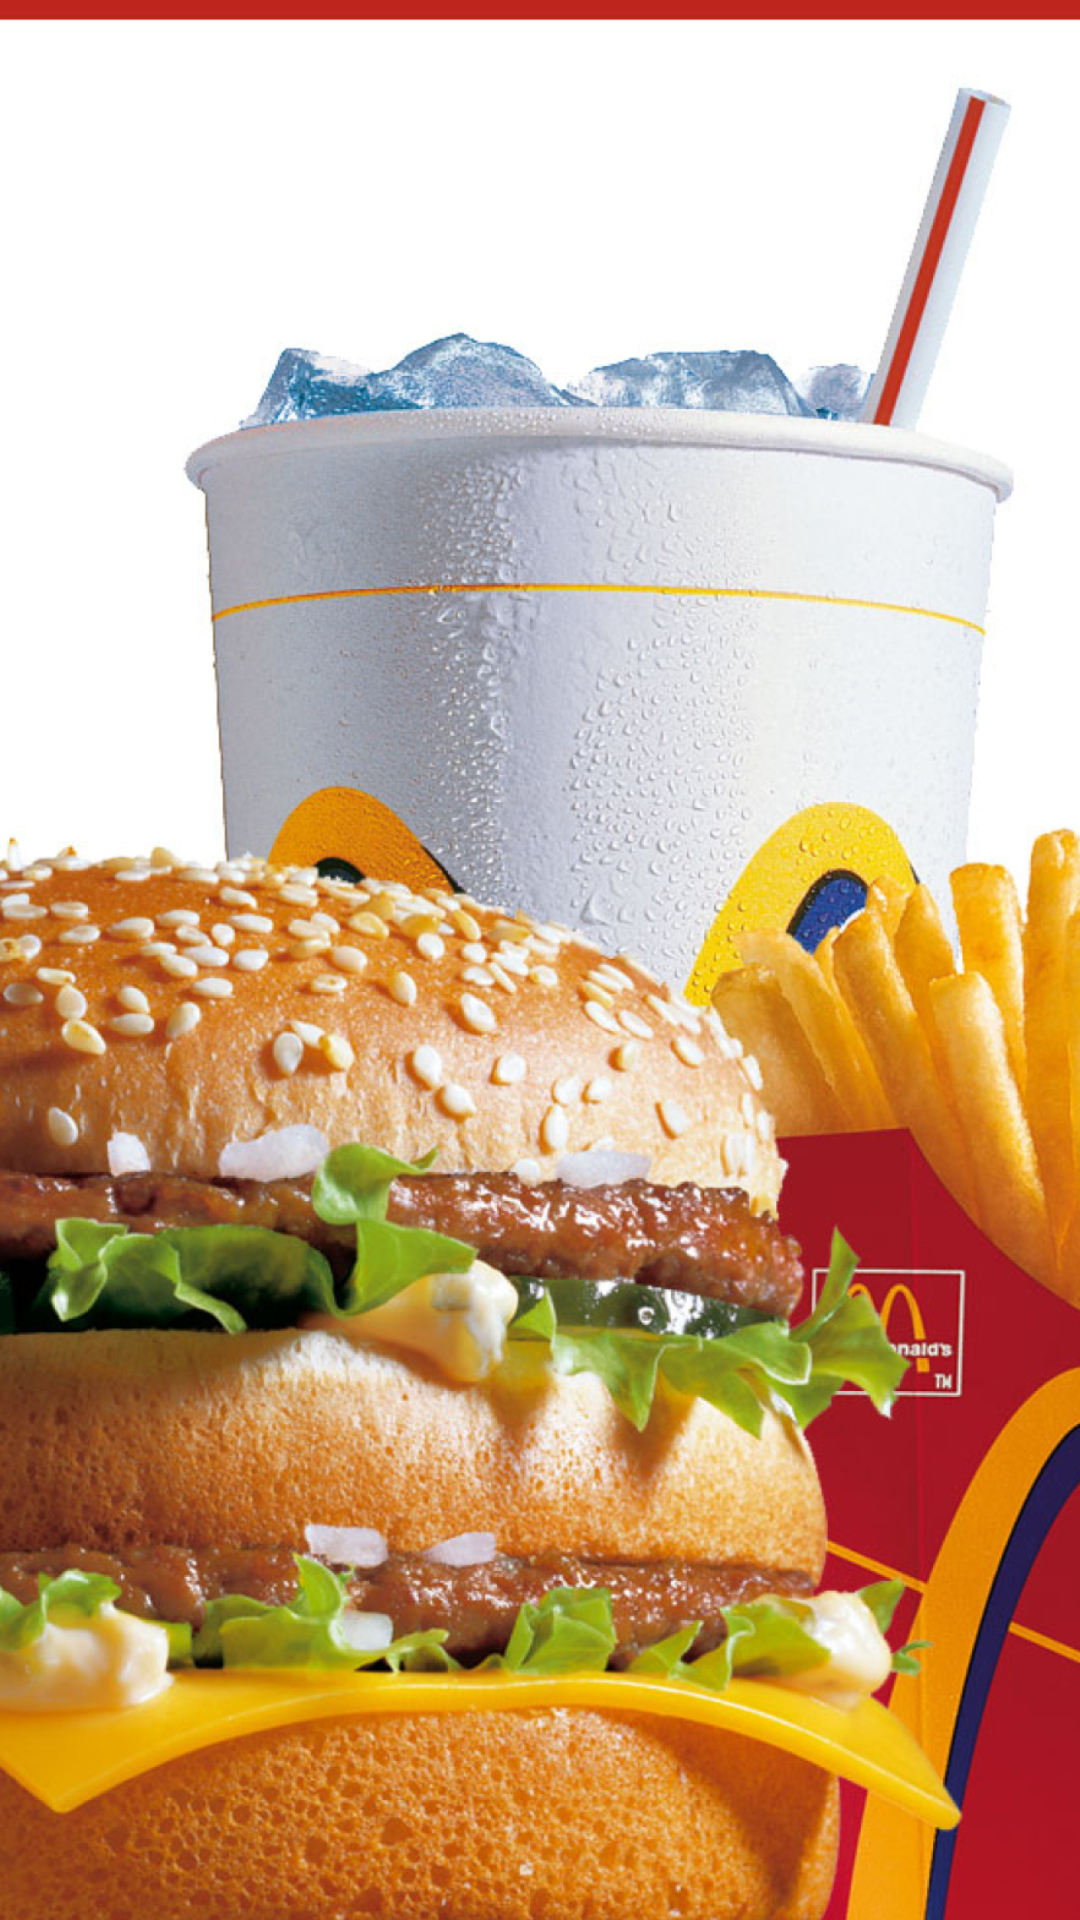 Das McDonalds: Big Mac Wallpaper 1080x1920